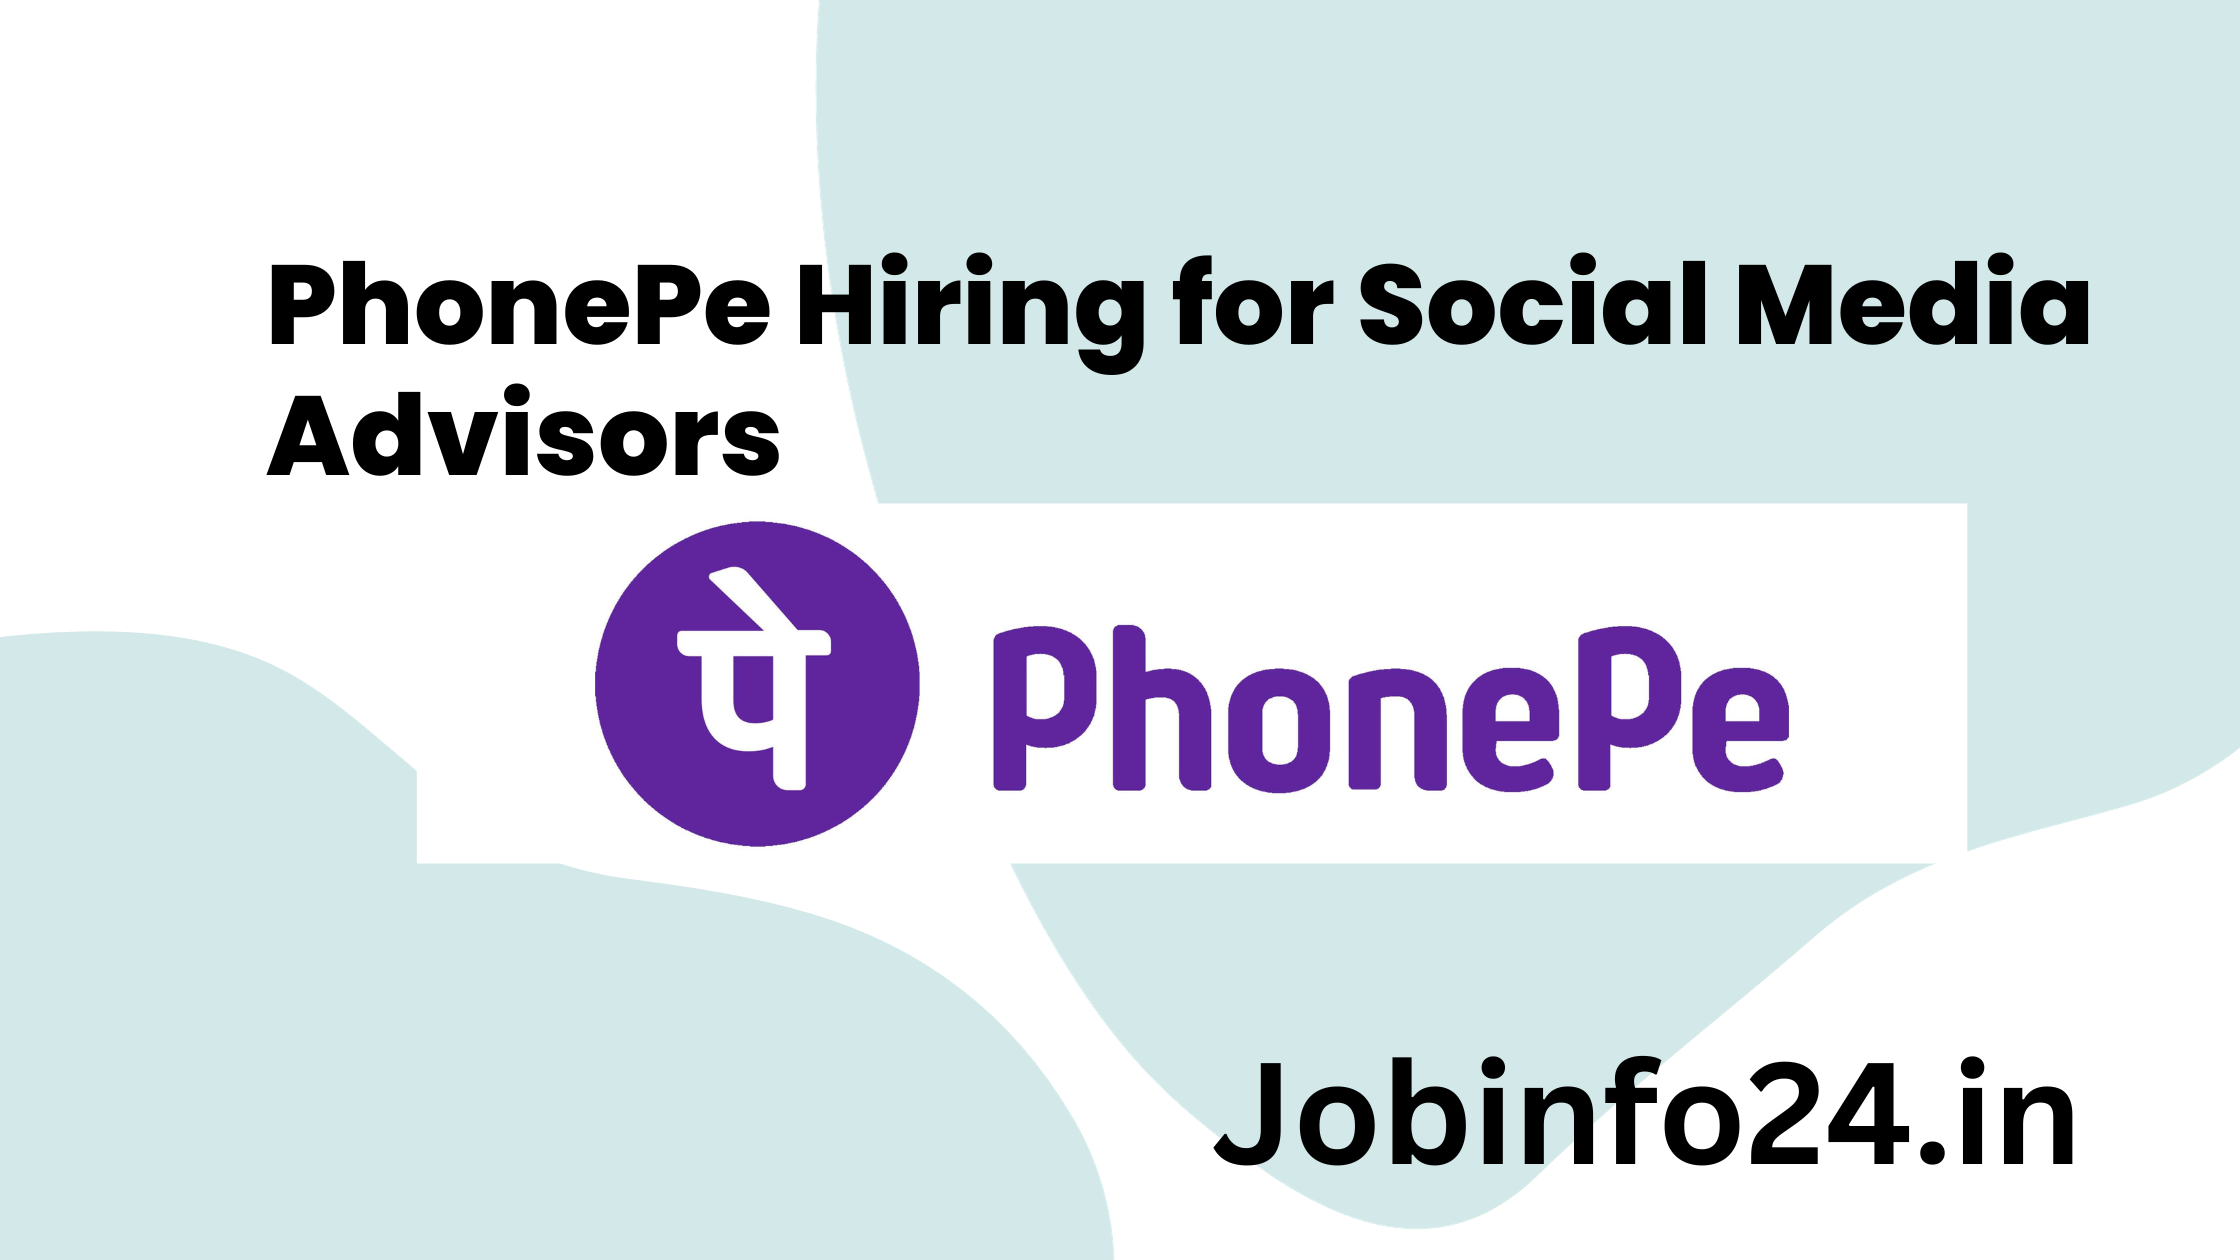 PhonePe Hiring for Social Media Advisors